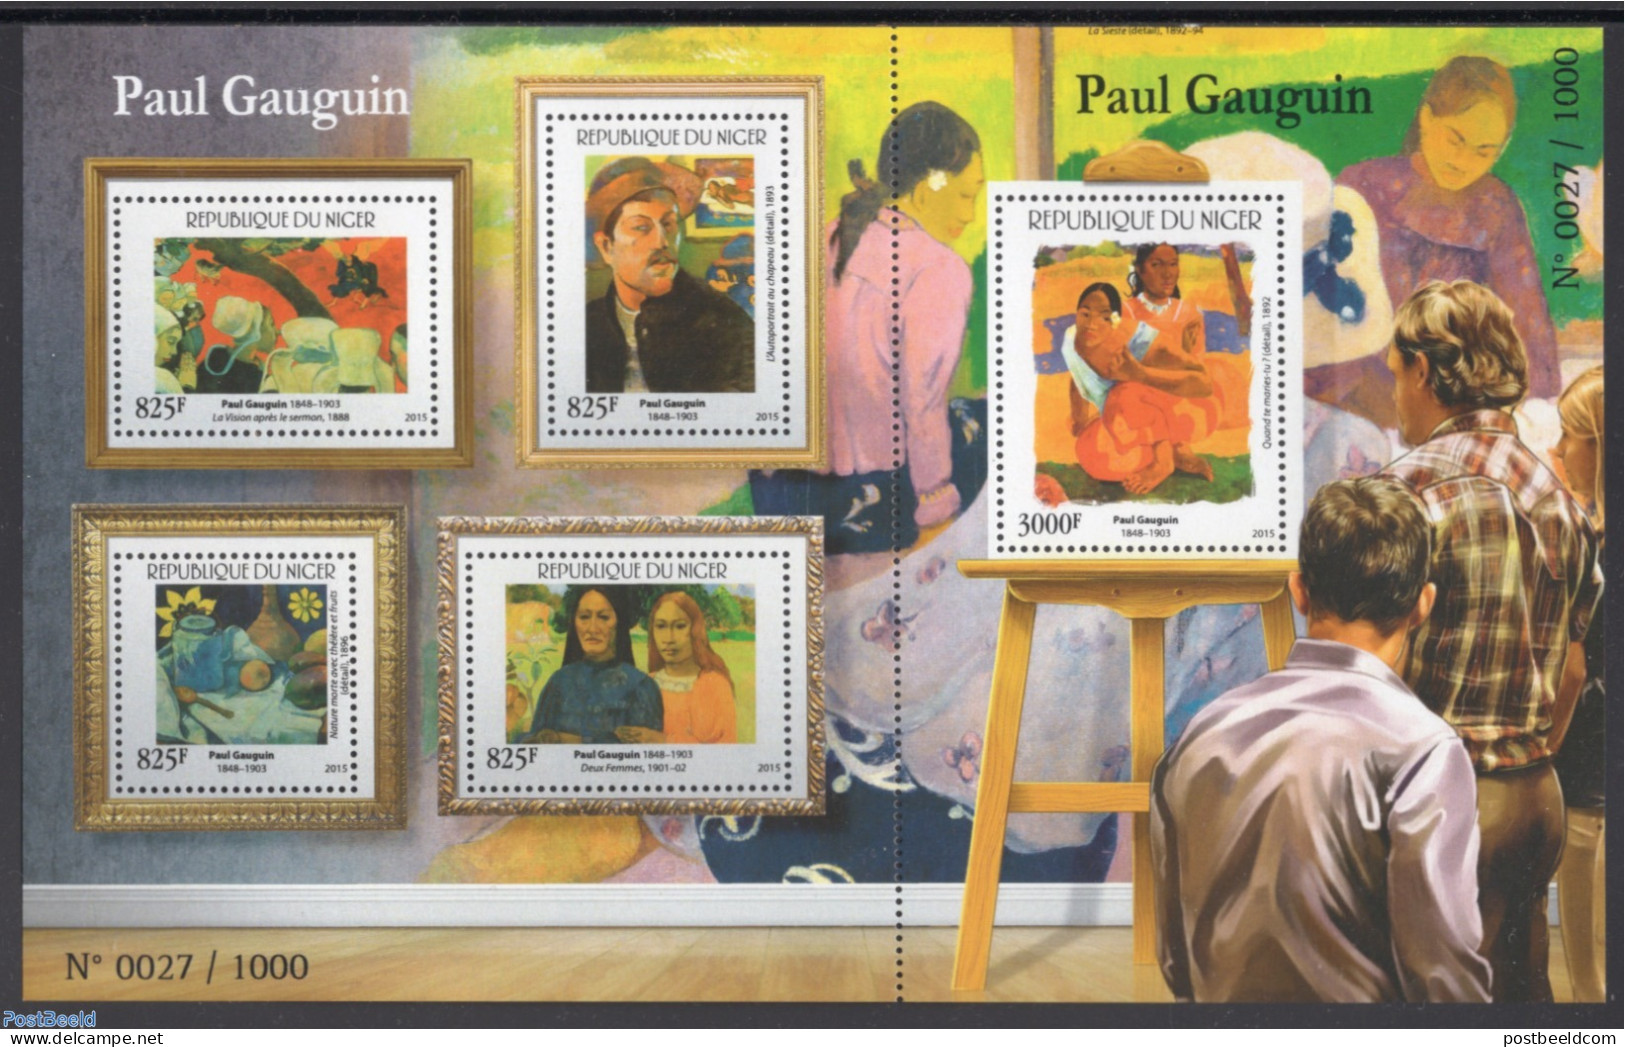 Niger 2015 Gauguin 5v M/s, Mint NH, Art - Paintings - Paul Gauguin - Niger (1960-...)